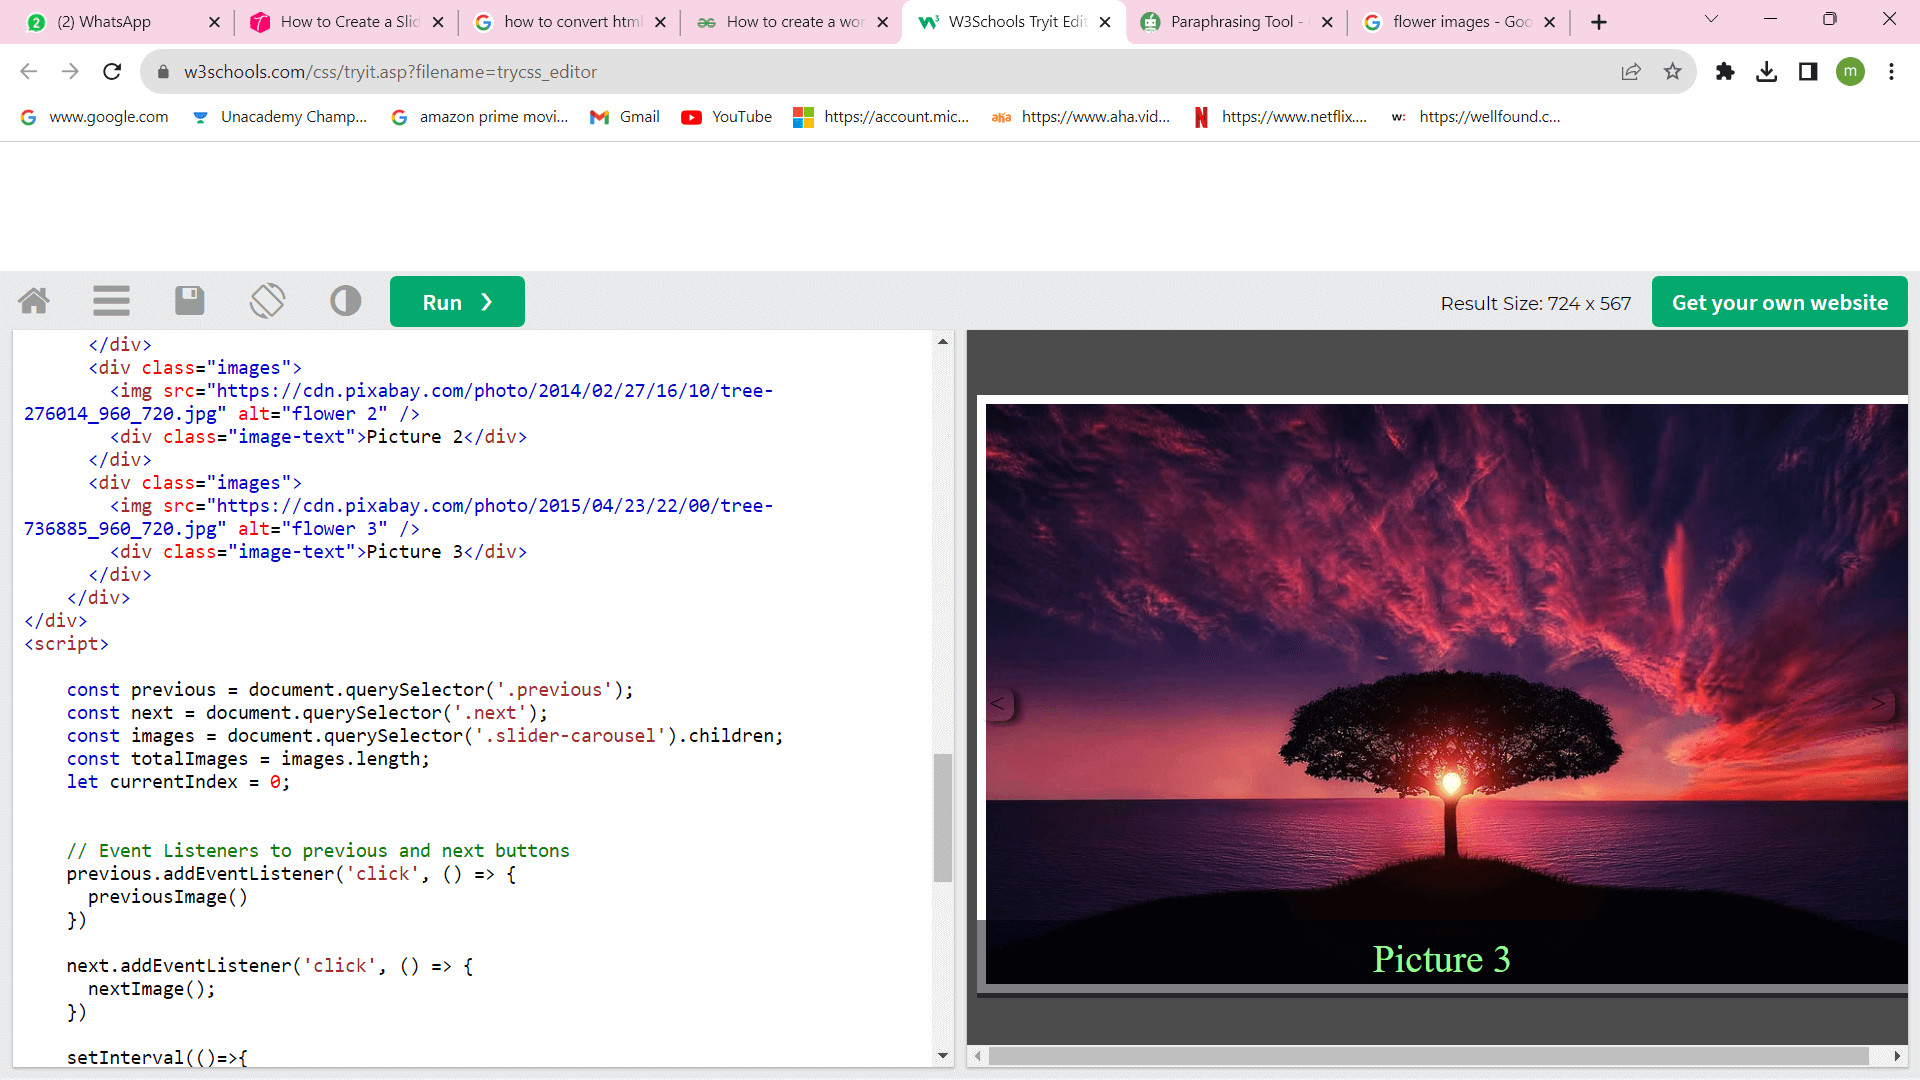 HTML Slider